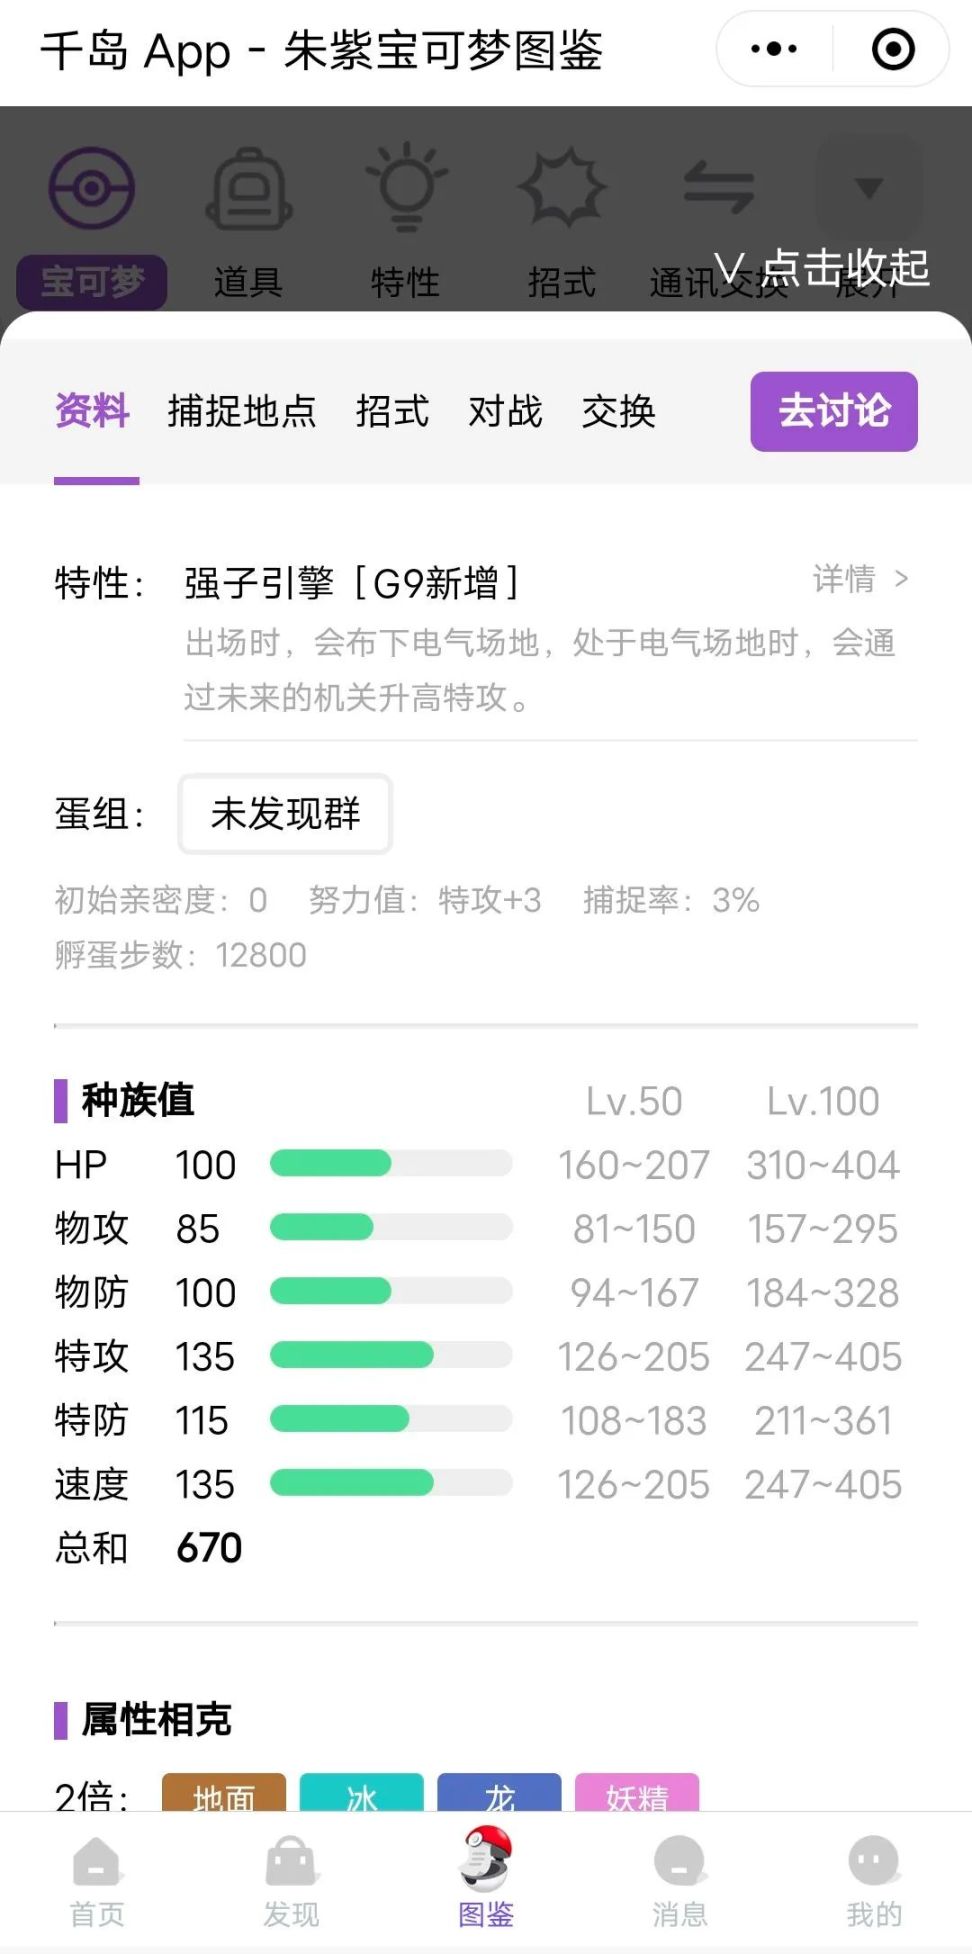 心比天高而技术白给:《宝可梦:朱/紫》评测 16%title%